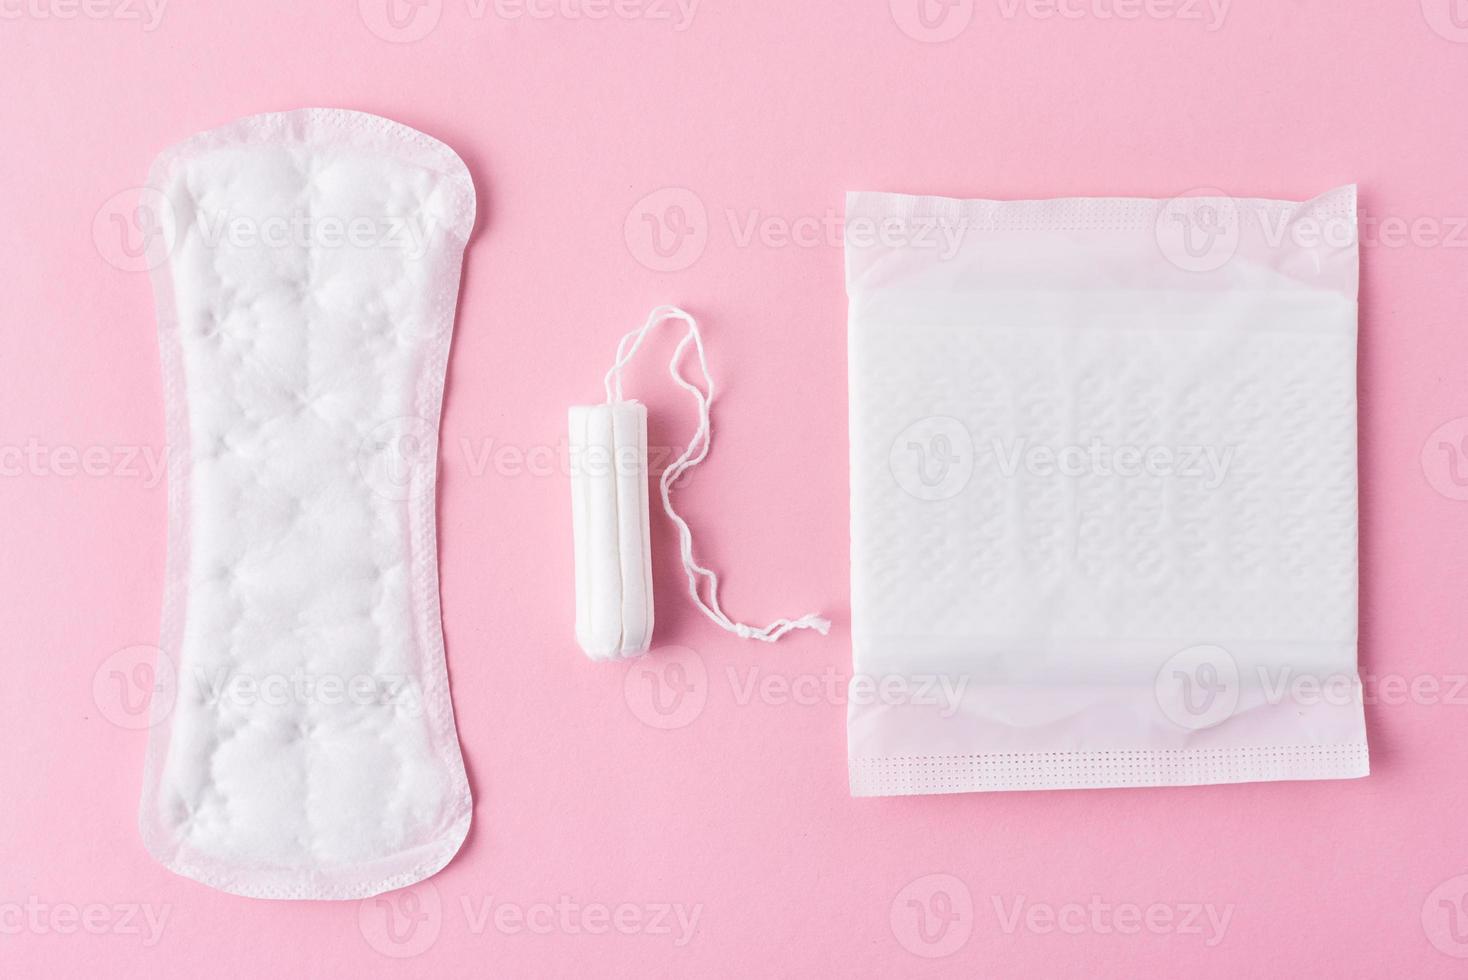 sanitär vaddera och menstruations- tampong på en rosa bakgrund foto